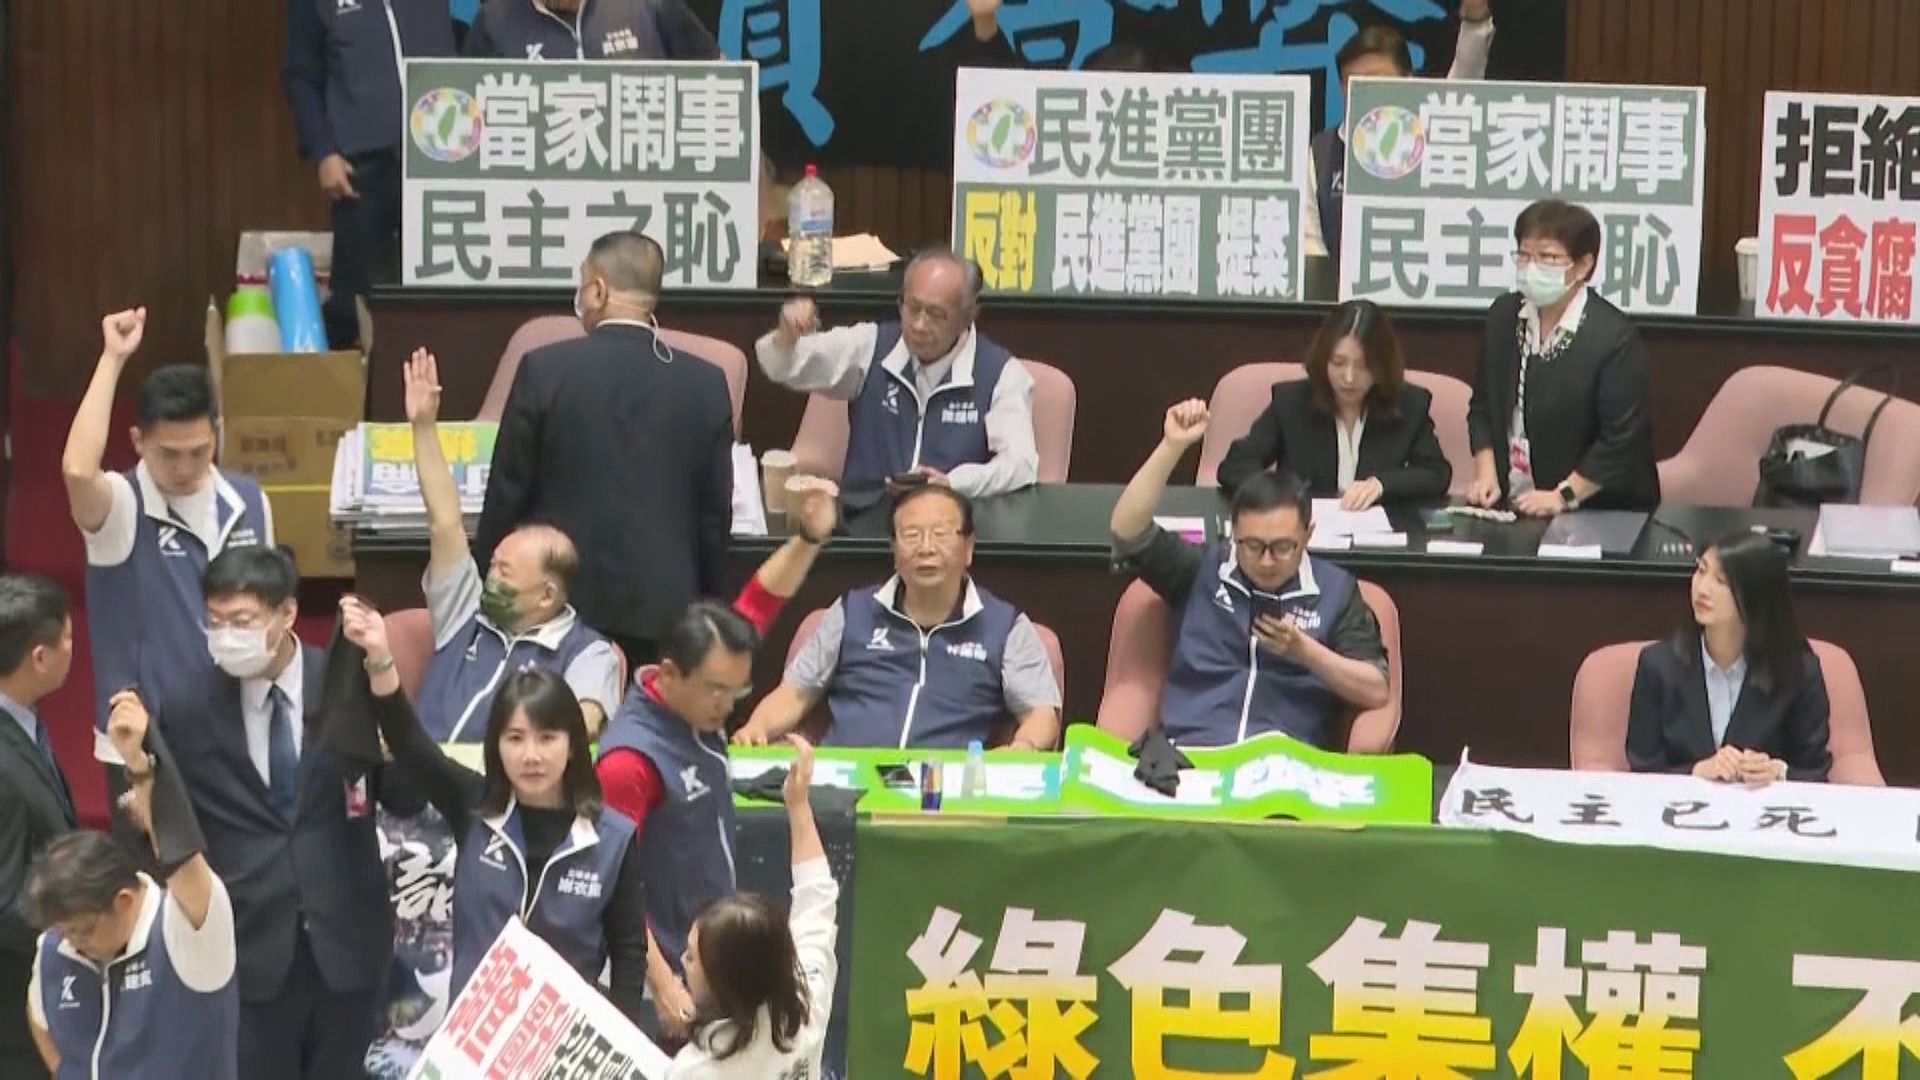 台灣續審立法院改革法案 再有民眾響應號召集會反對法案